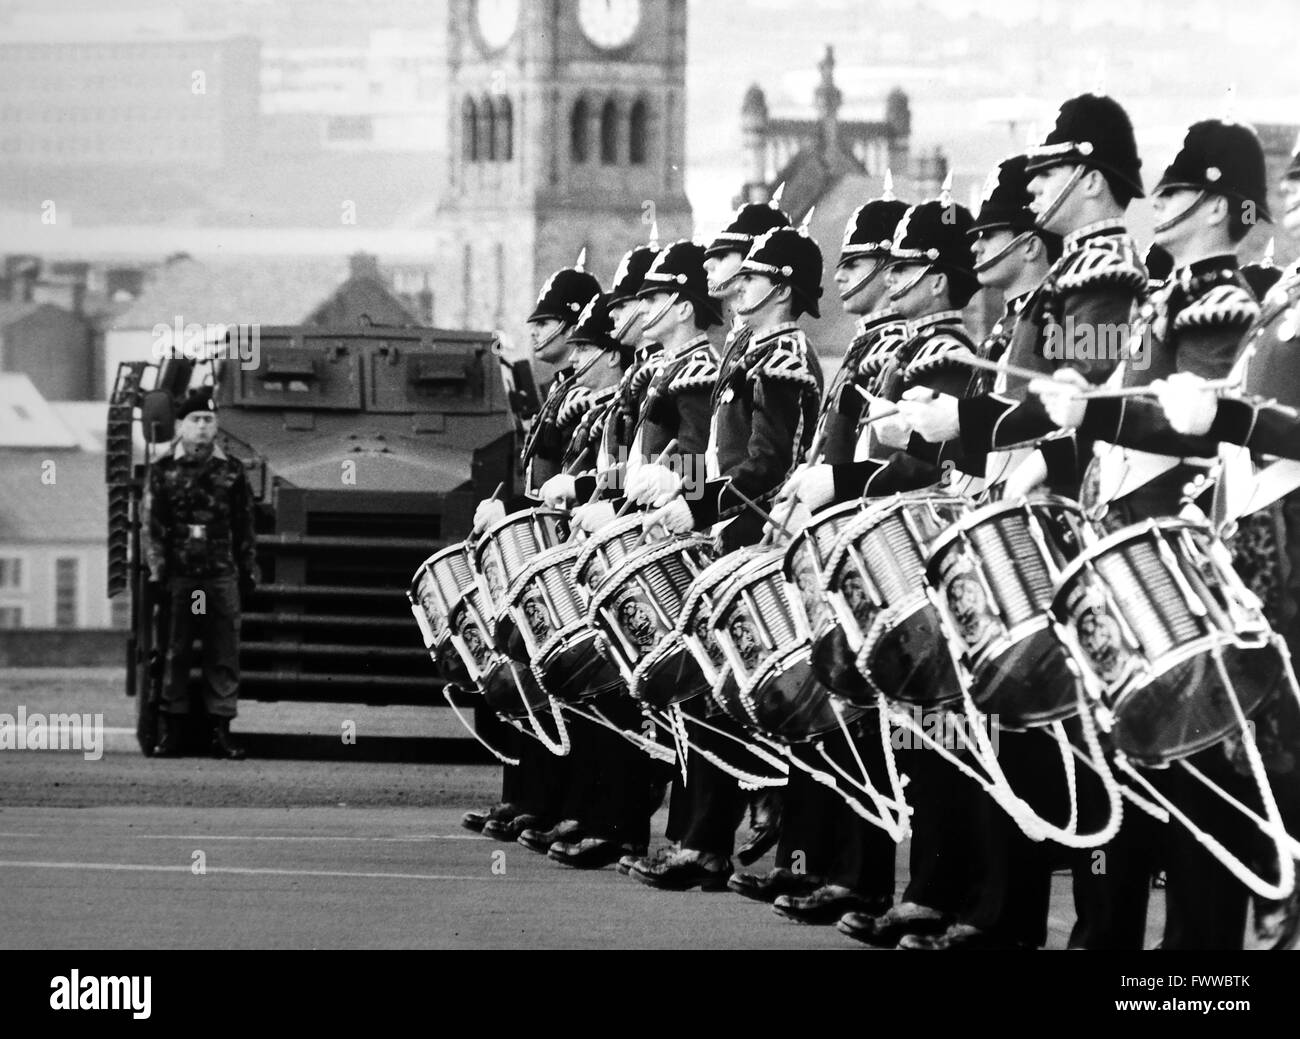 L'Irlande du Nord 1984 - L'une des bandes du premier bataillon du régiment de la Reine jouant sur la place de la caserne de Londonderry Banque D'Images